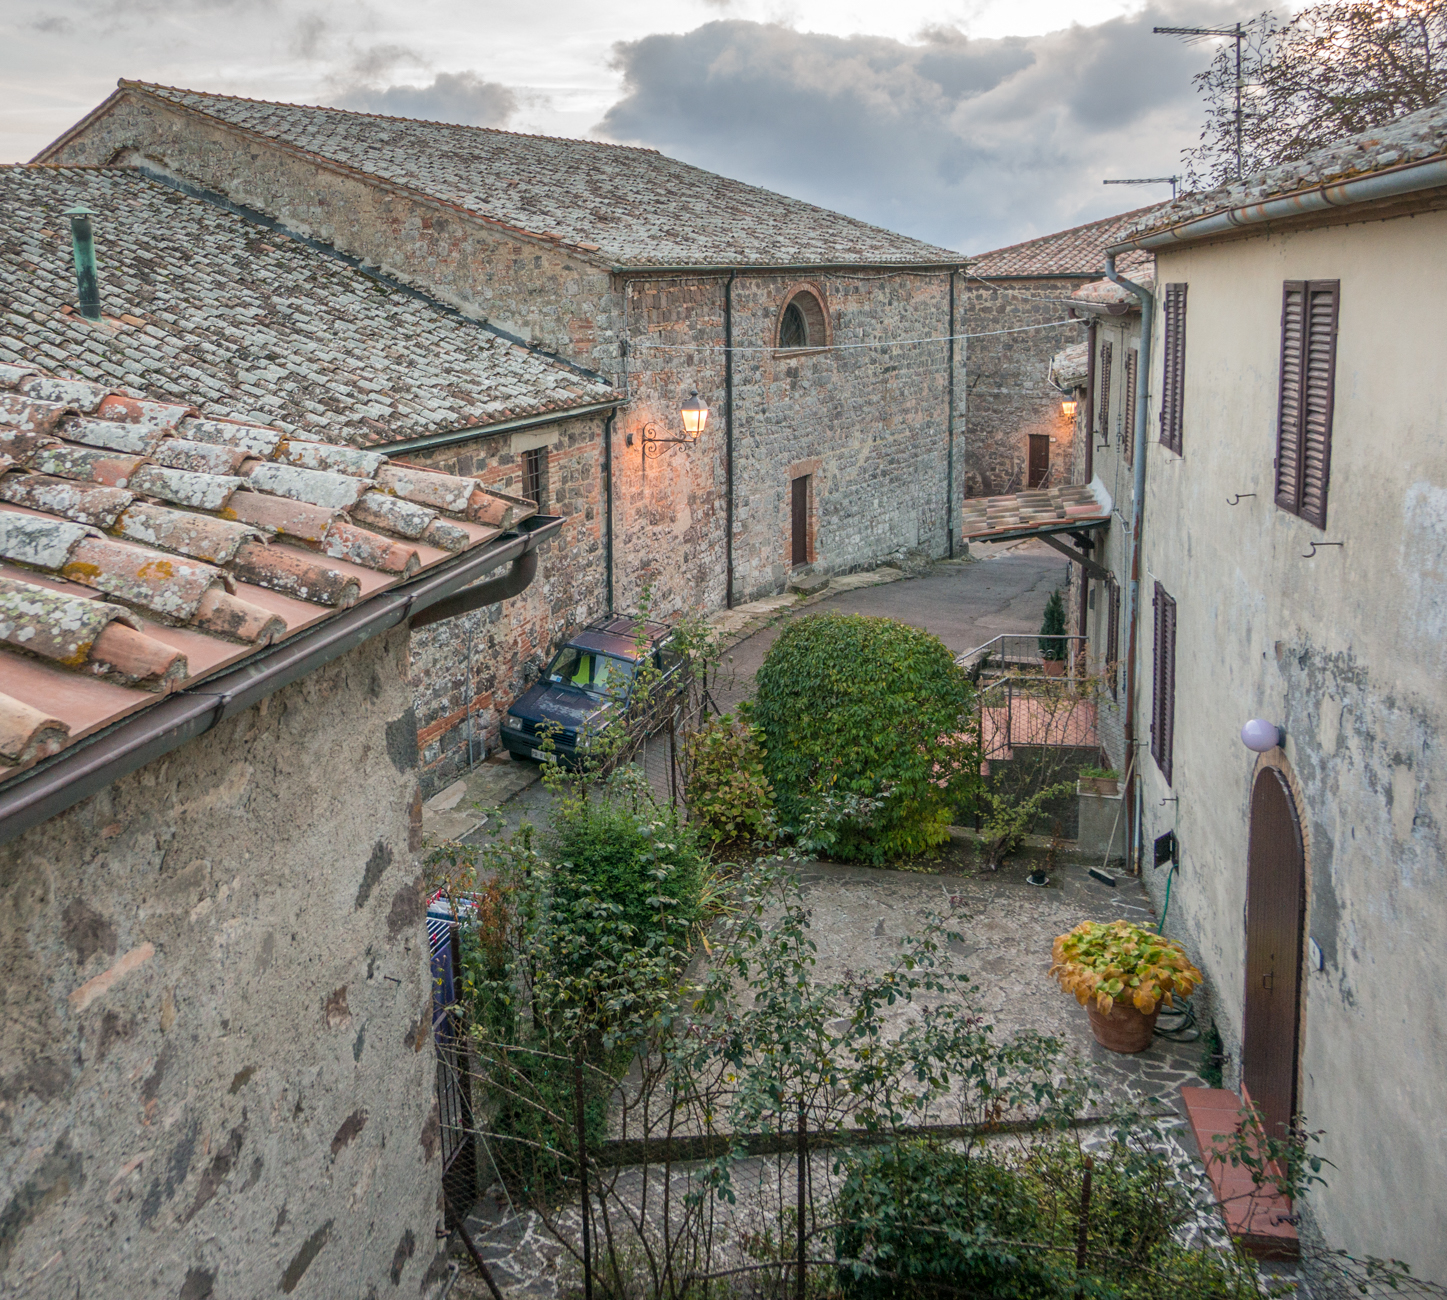 View from the Spedale di San Pietro e Giacomo (pilgrim ostello) in Radicofani, Italy | Photo by Mike Hudak